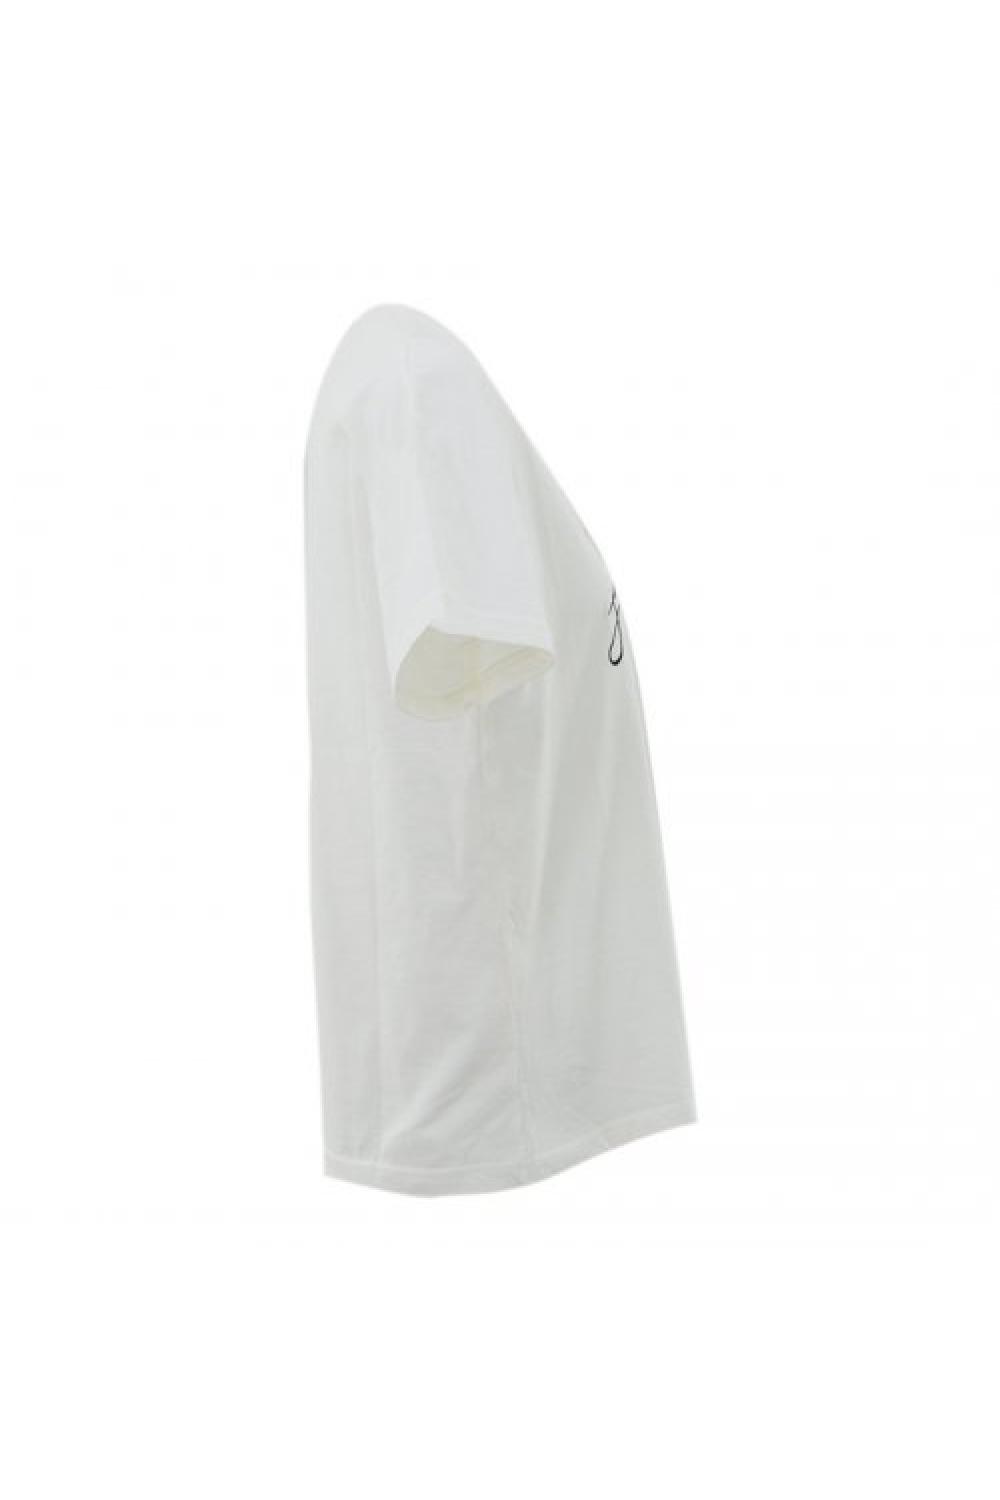 STAFF T-shirt Tessa Γυναικείο - Λευκό (63-013.047-N0010)